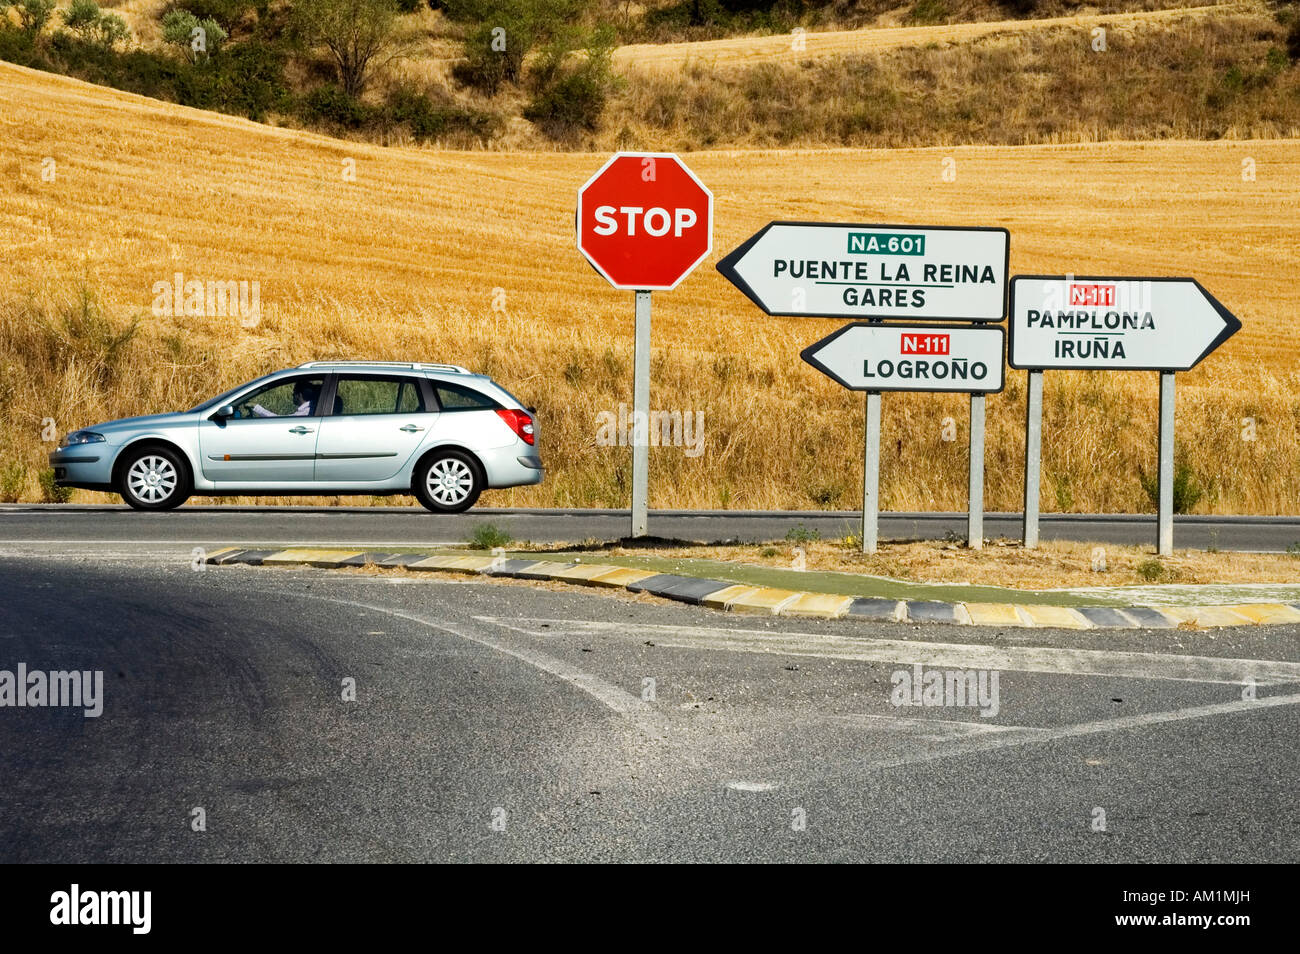 Une Renault Laguna Estate voiture roule au-delà d'un passage bien balisés, Navarra, Espagne Banque D'Images